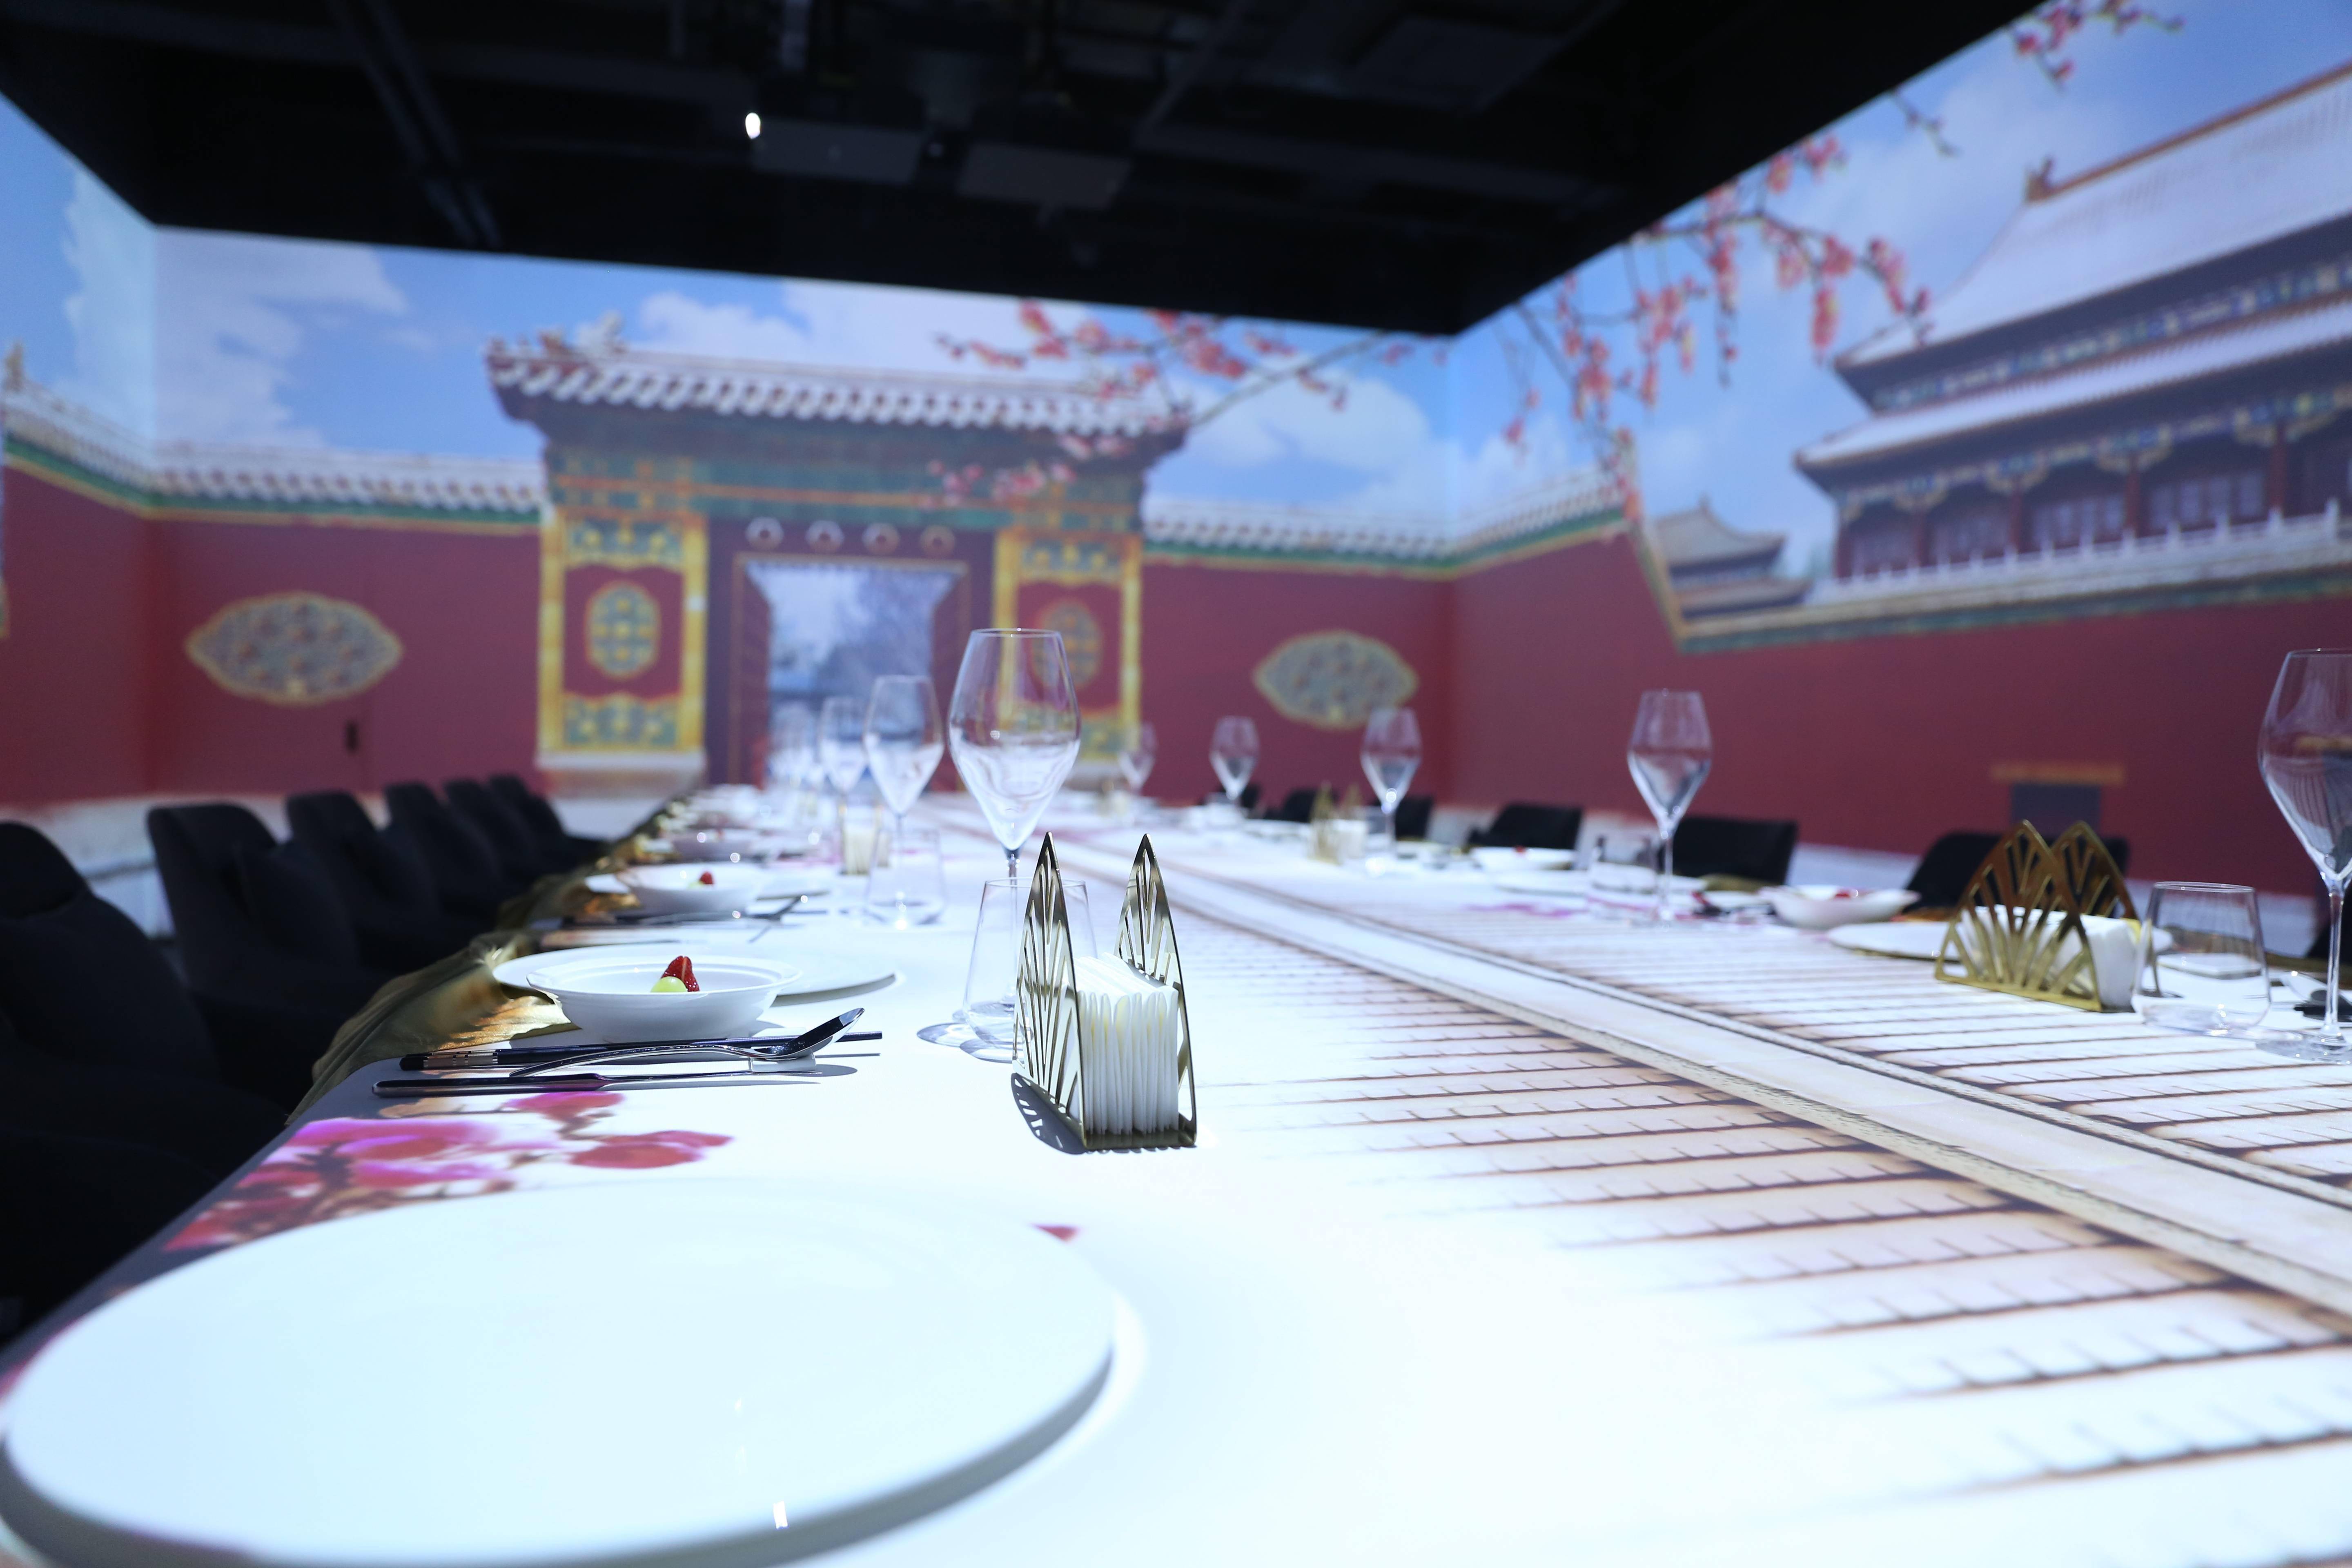 全聚德北京前门起源店光影餐厅亮相，体验“穿越”感受历史